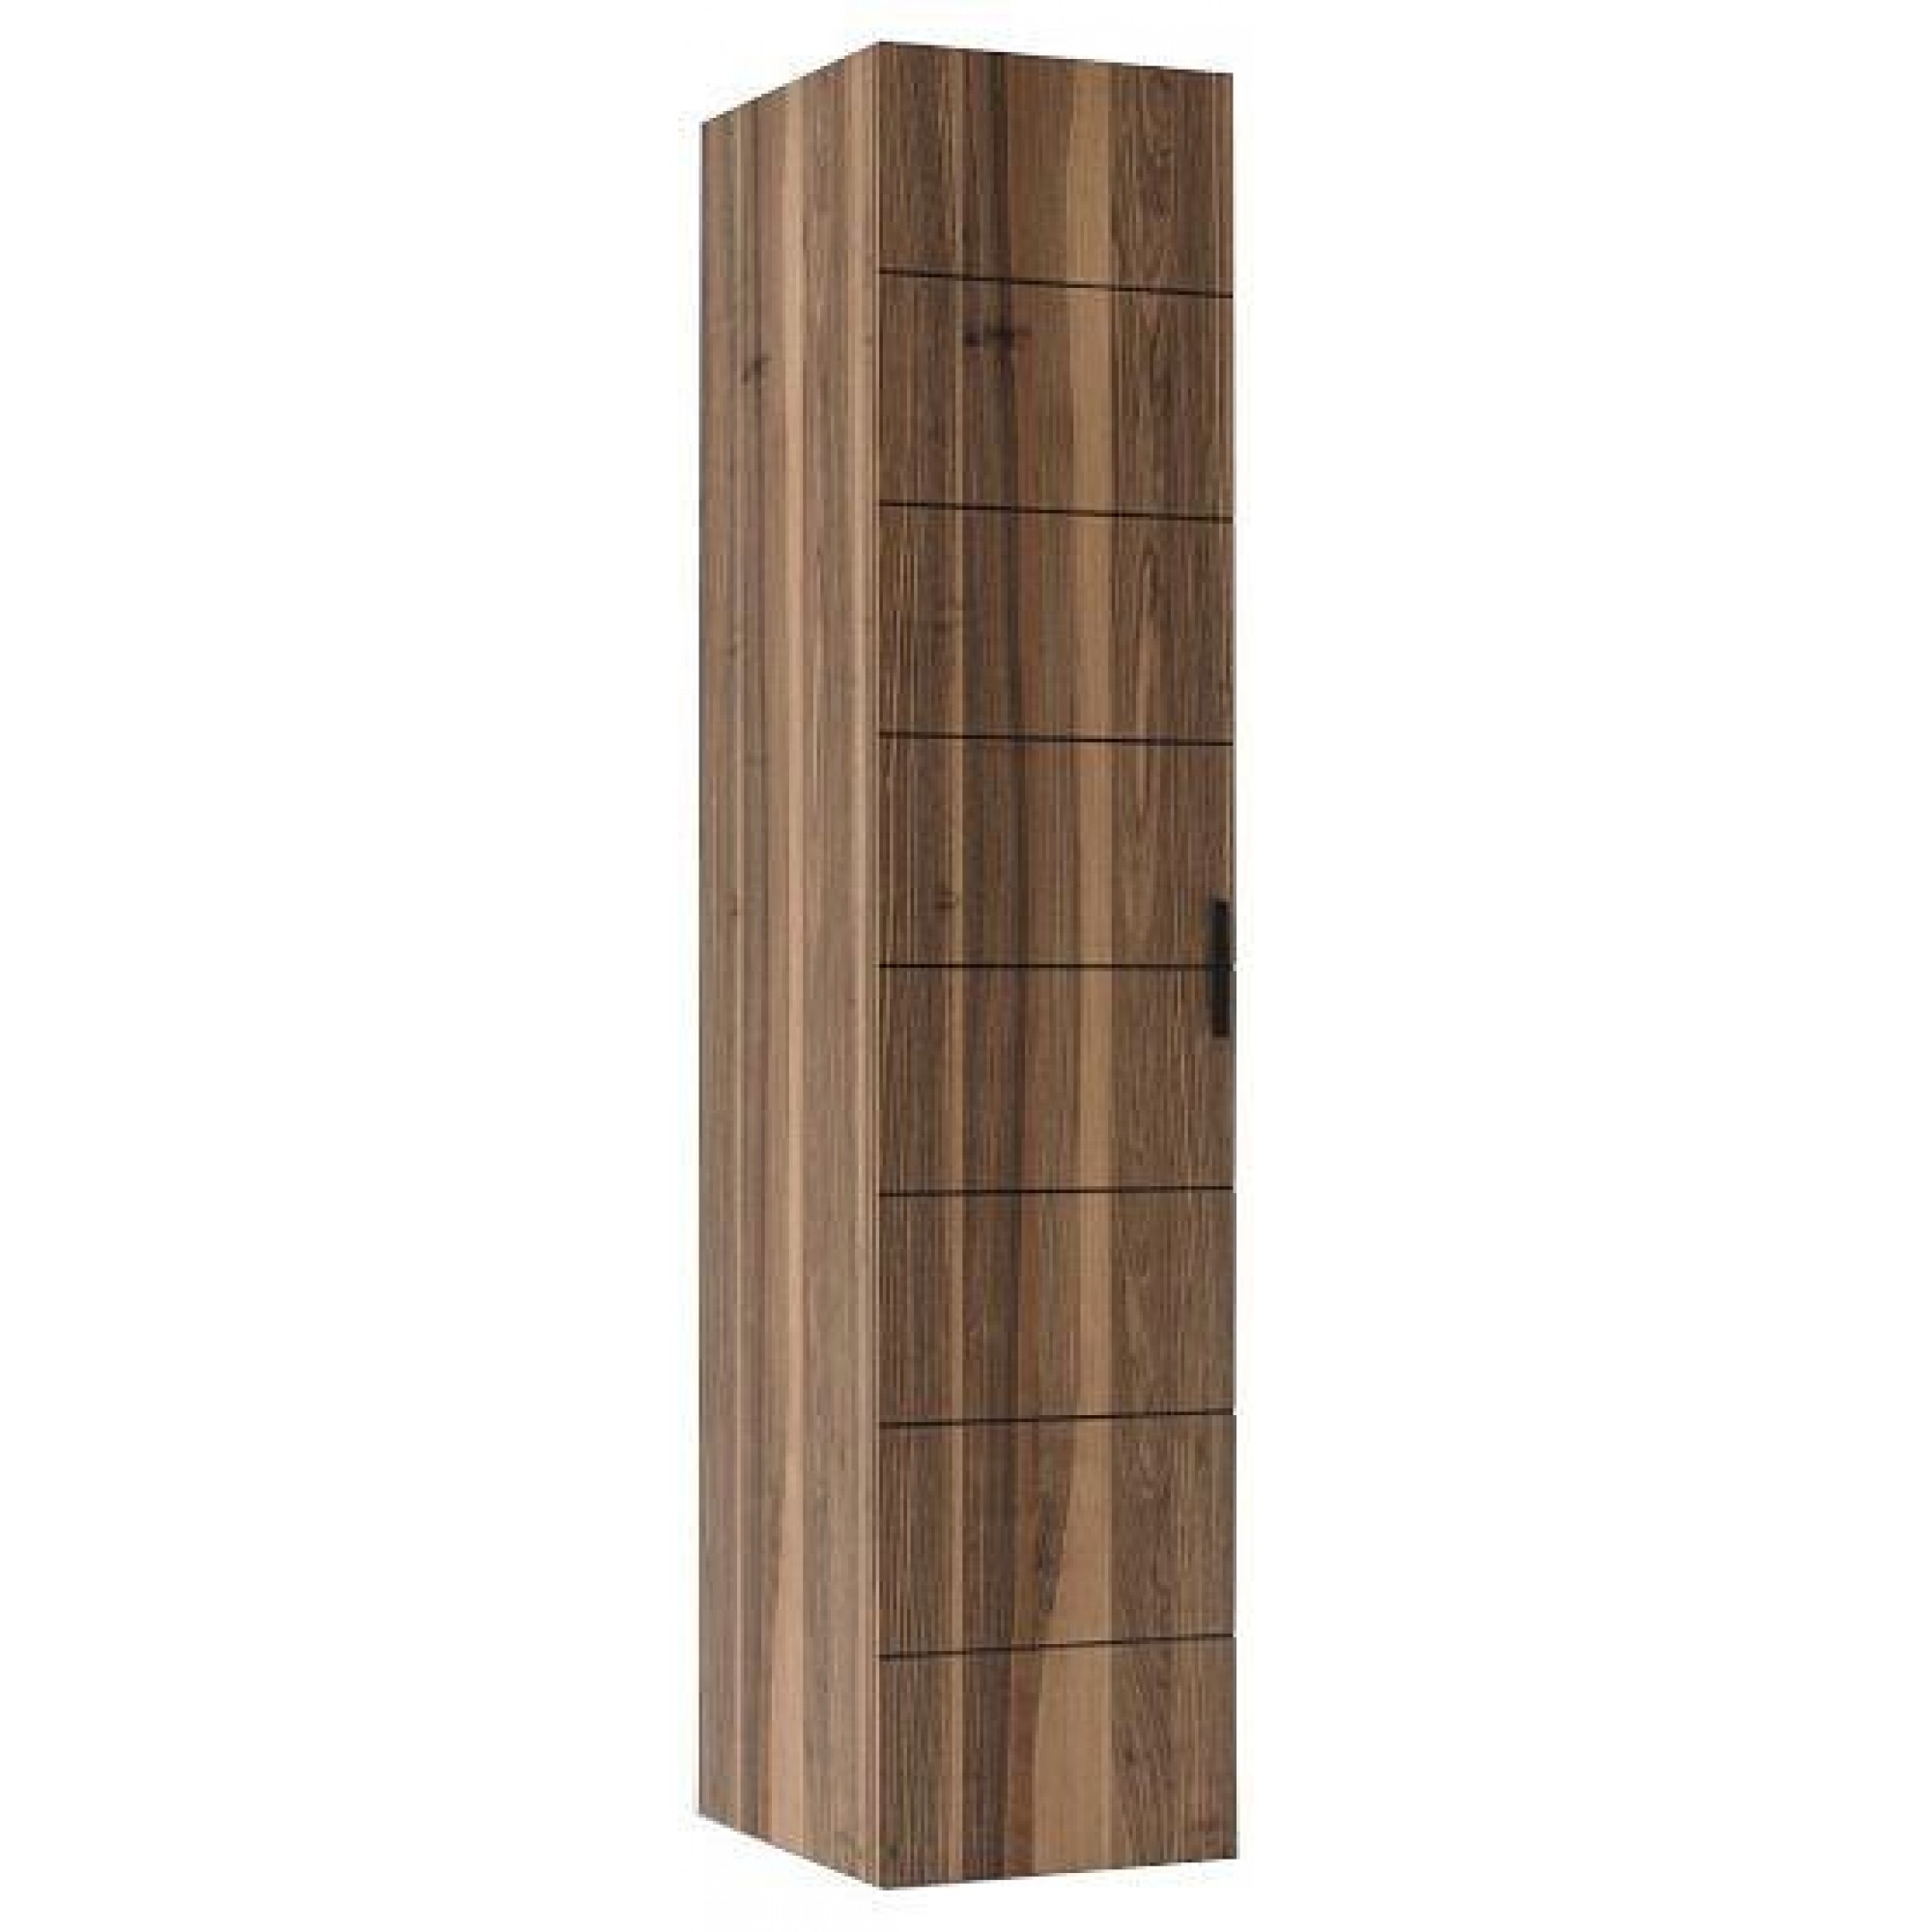 Шкаф для белья 140SA-52OR древесина коричневая нейтральная орех GRD_TT-00010415